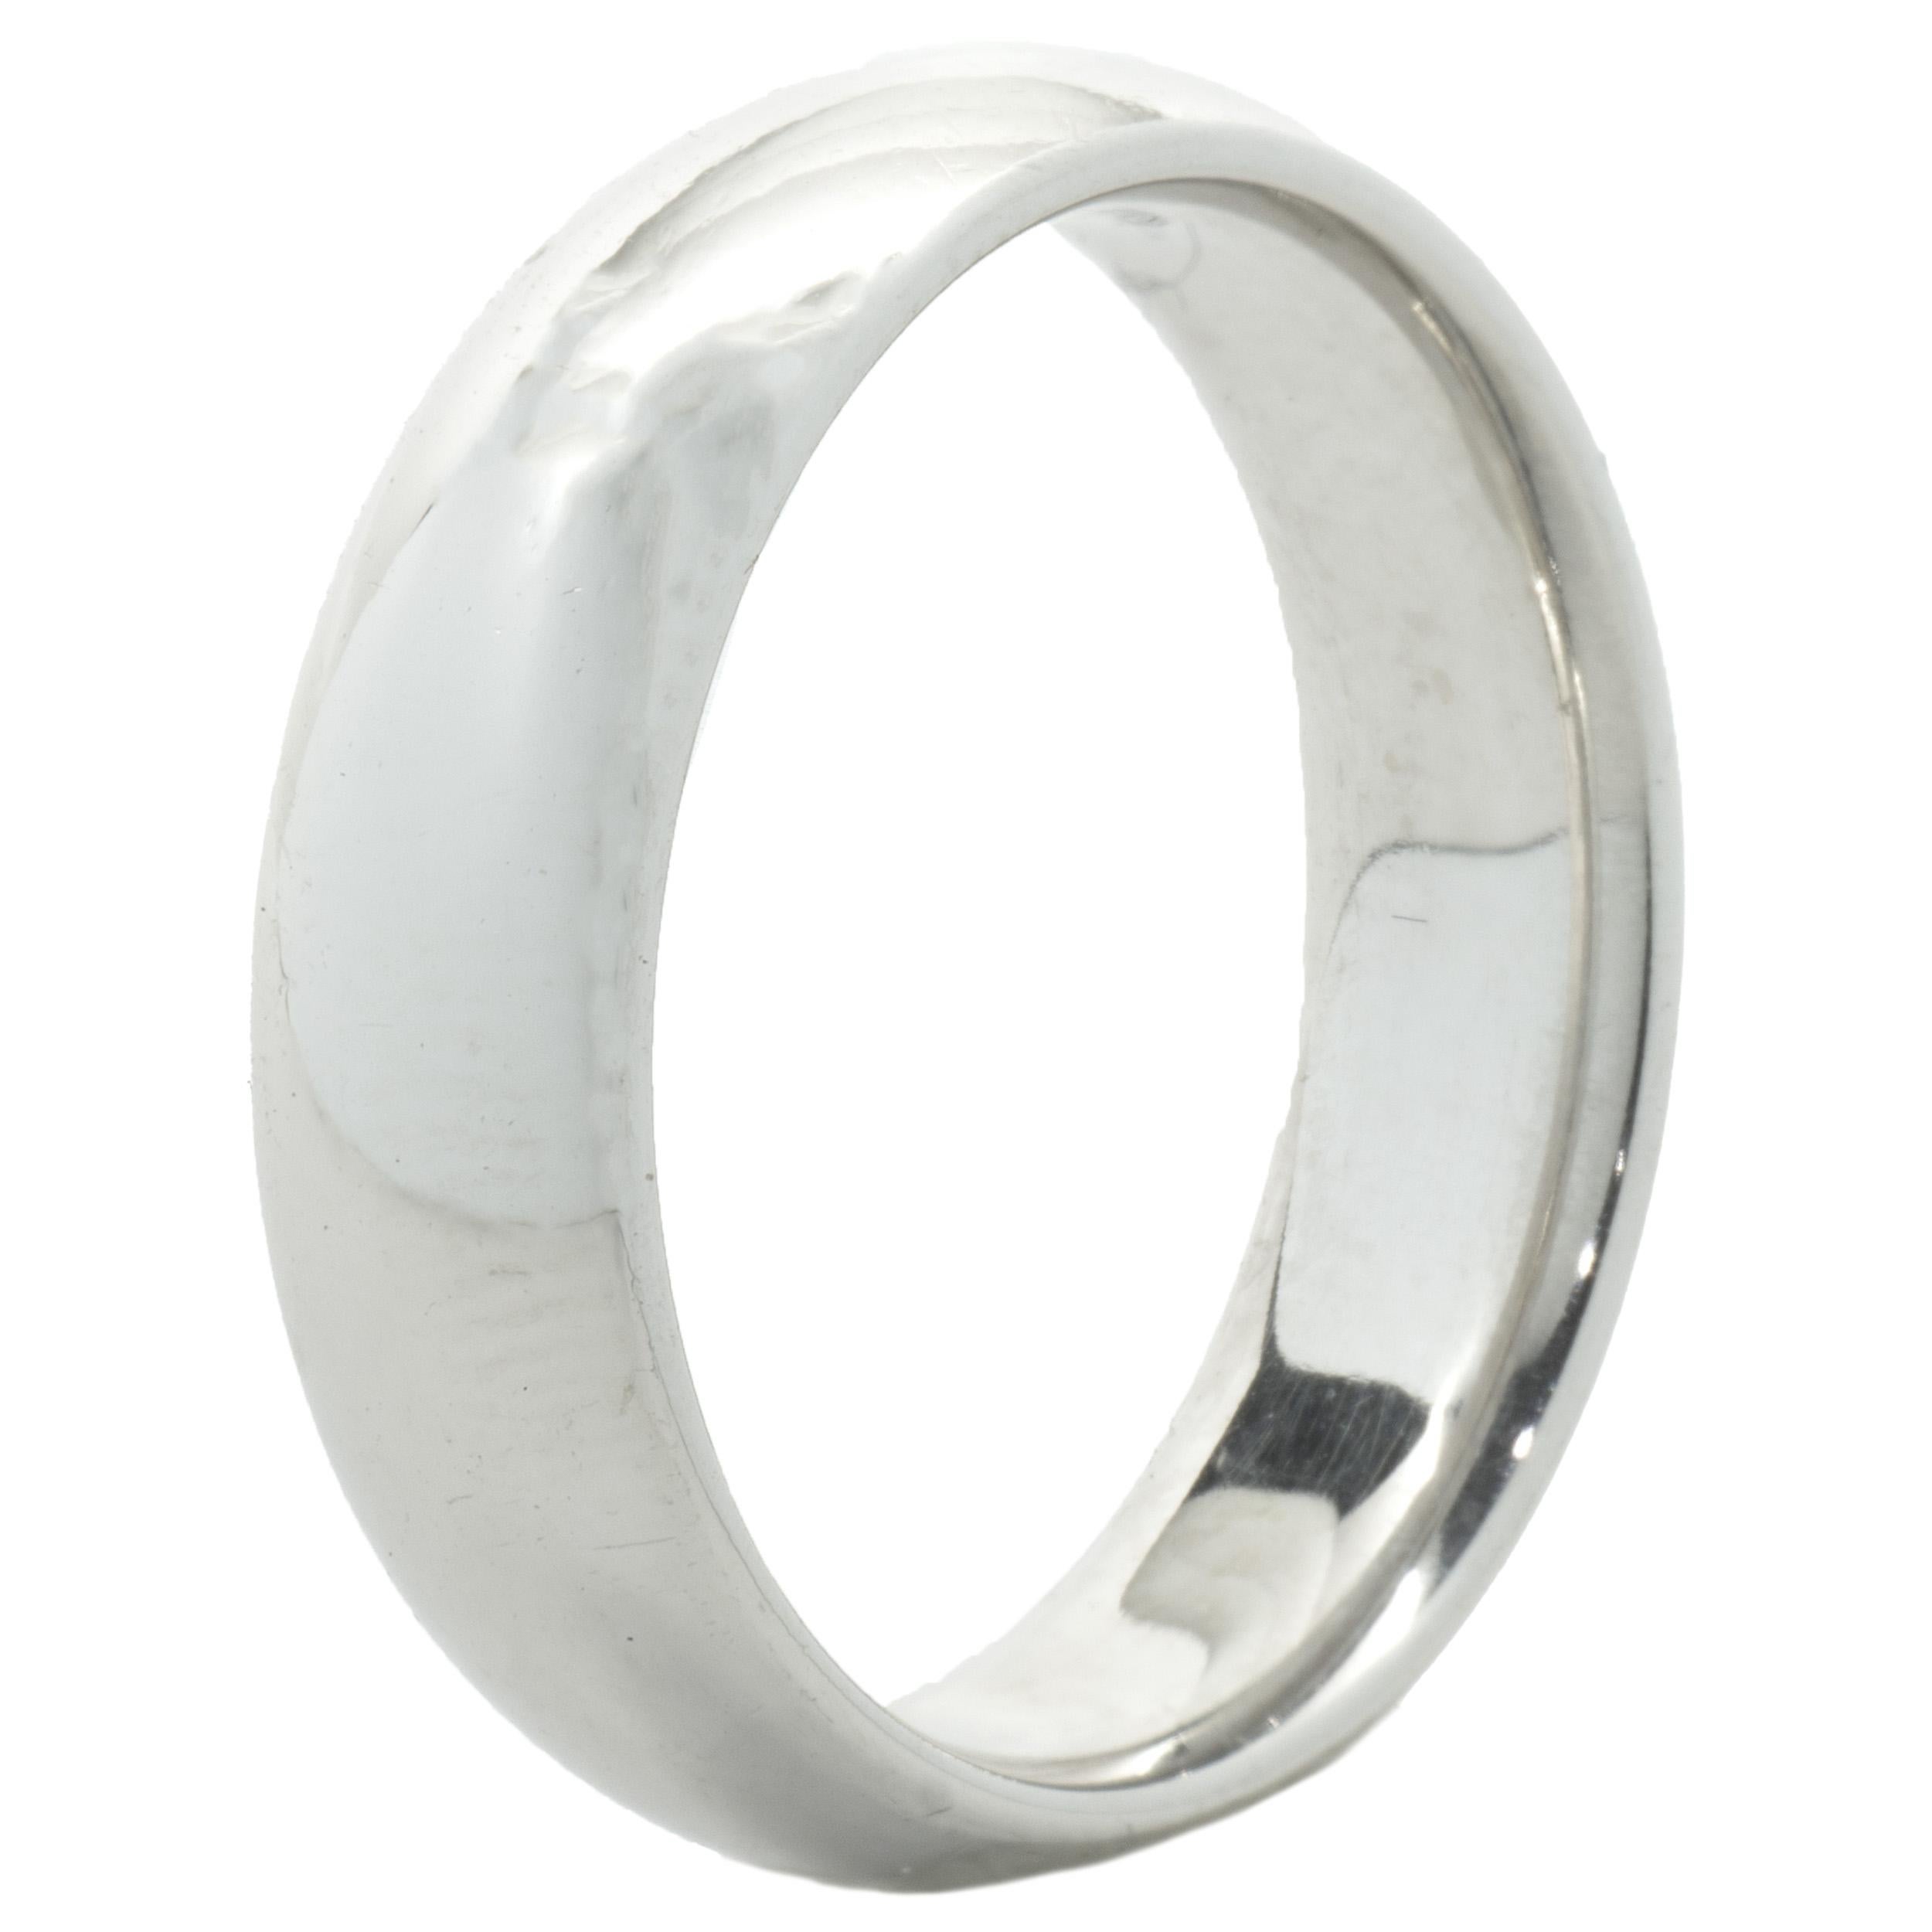 Concepteur : personnalisé
Matériau : Or blanc 14K
Dimensions : l'anneau mesure 6 mm de large
Poids :  9,16 grammes
Taille de l'anneau : 9,5 (Veuillez prévoir jusqu'à 2 jours ouvrables supplémentaires pour les demandes de taille) 